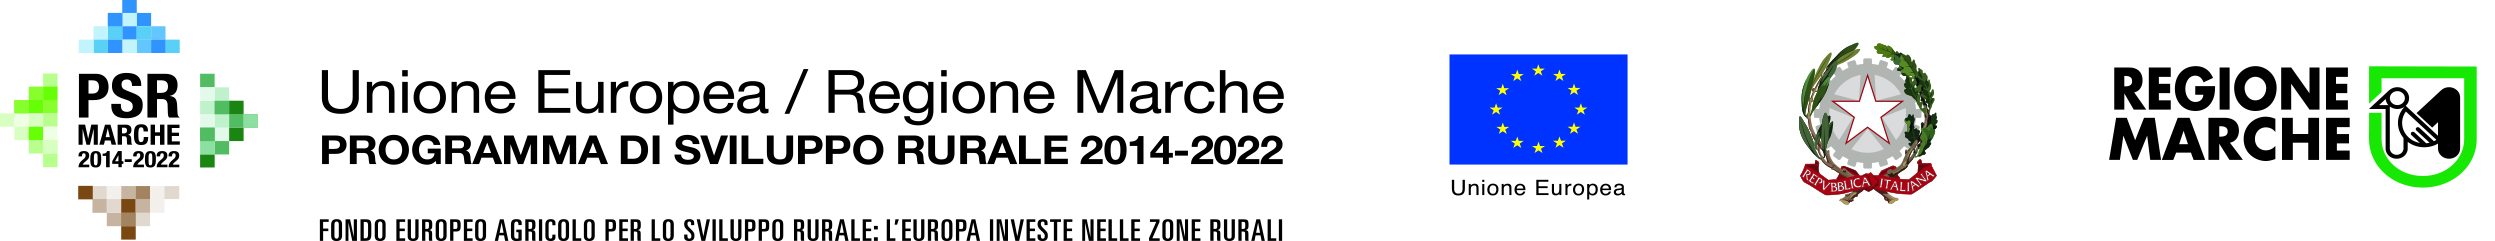 PSR 2014-2022 SOTTOMISURA 2.1 Consulenza - Consorzio Marche Bio